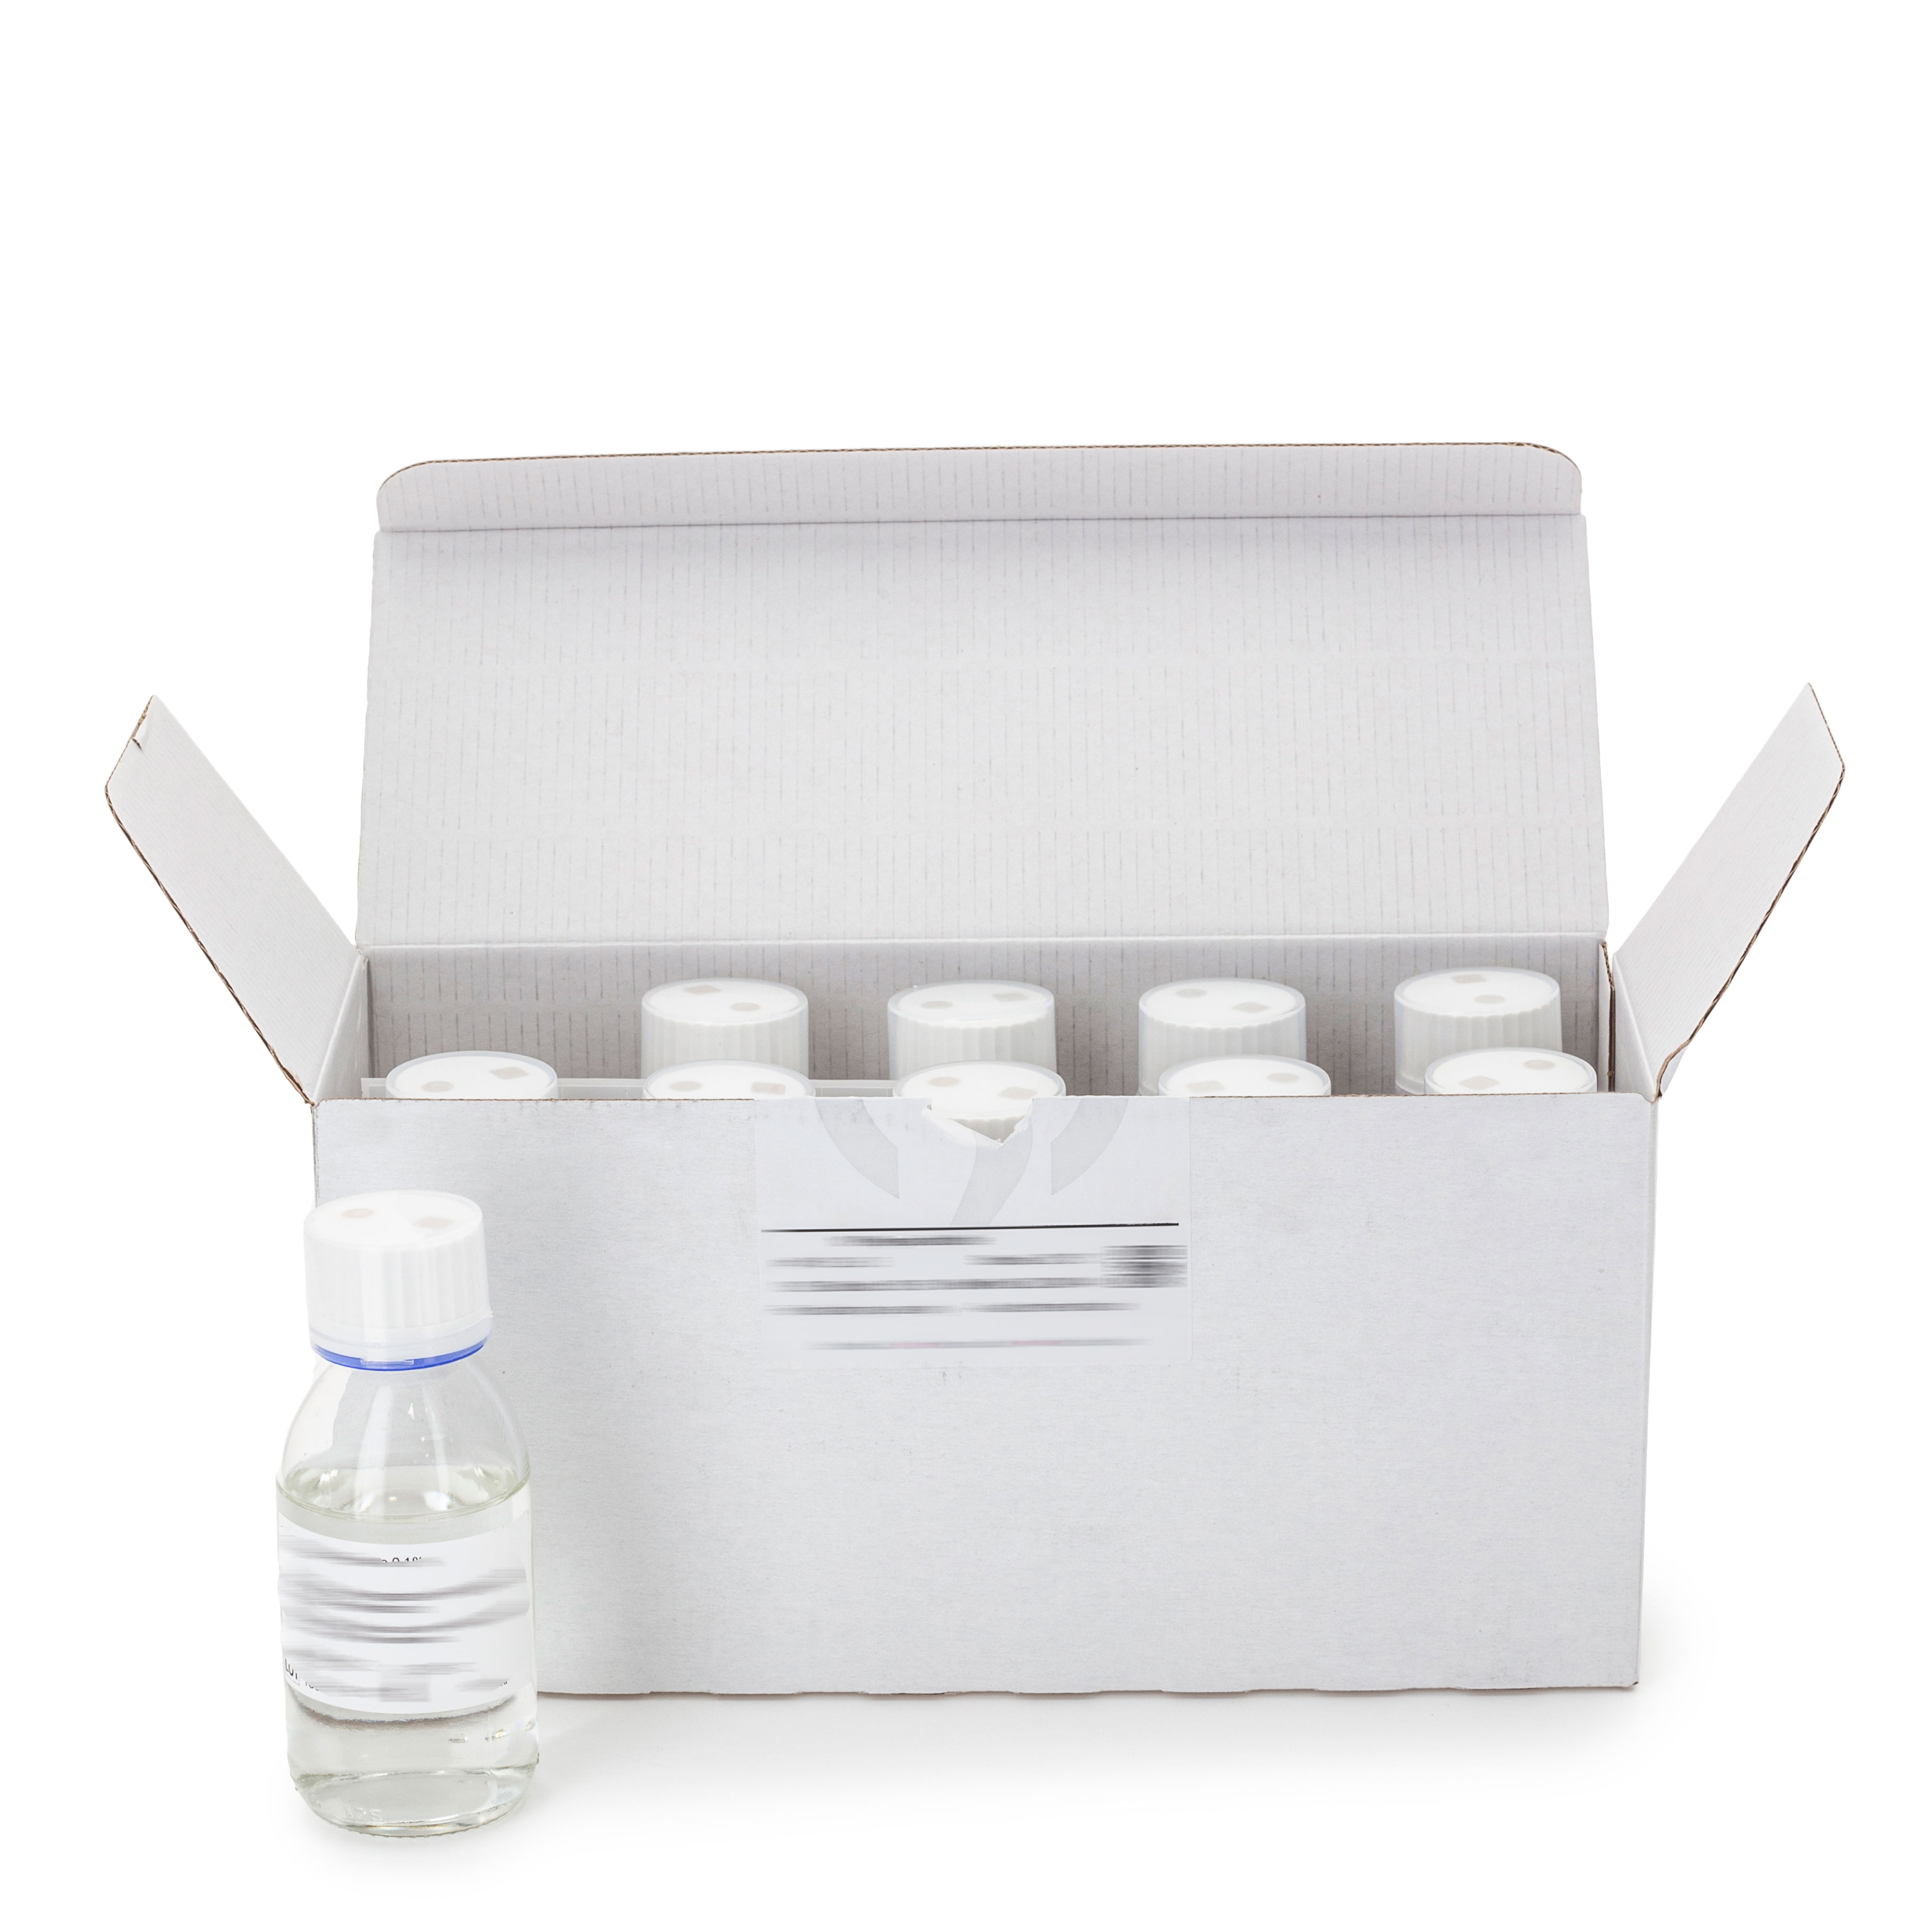 Agar levadura cloranfenicol glucosa (CGA) - Medio sólido y selectivo para el aislamiento y recuento de hongos en leche y productos lácteos según Normas ISO 7954 y FIL-IDF 94B.